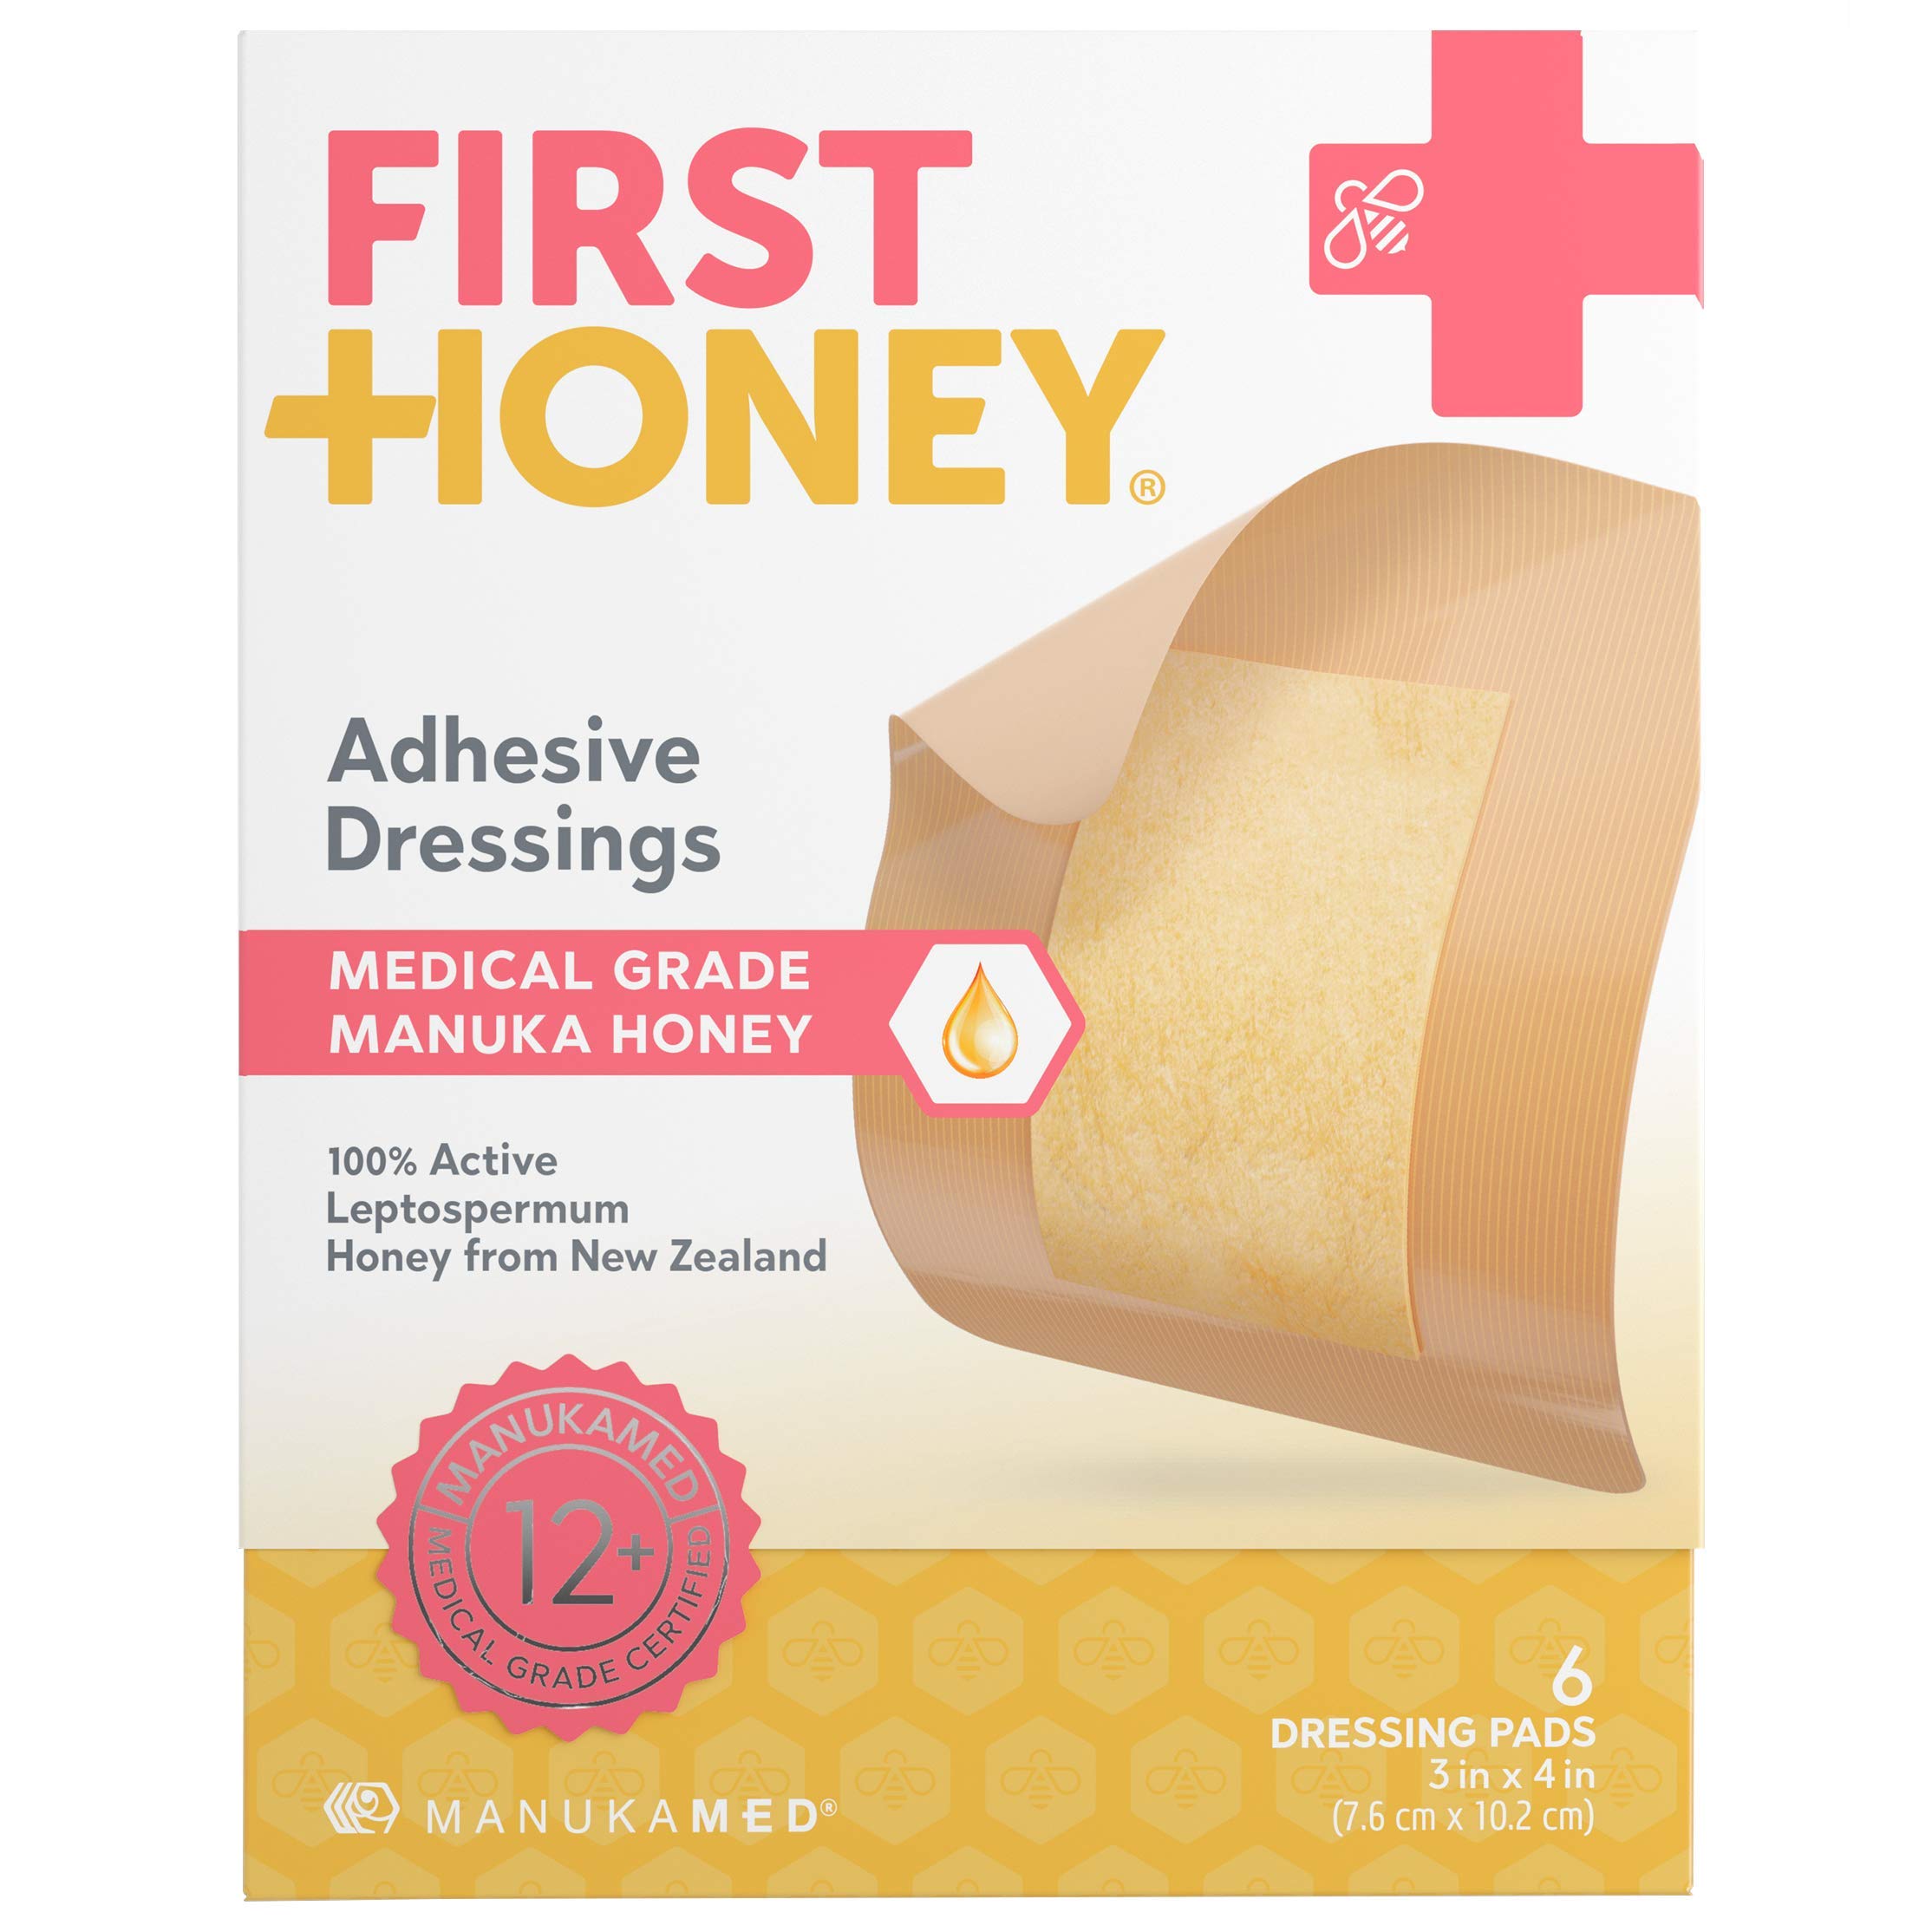 Medical grade manuka honey guide